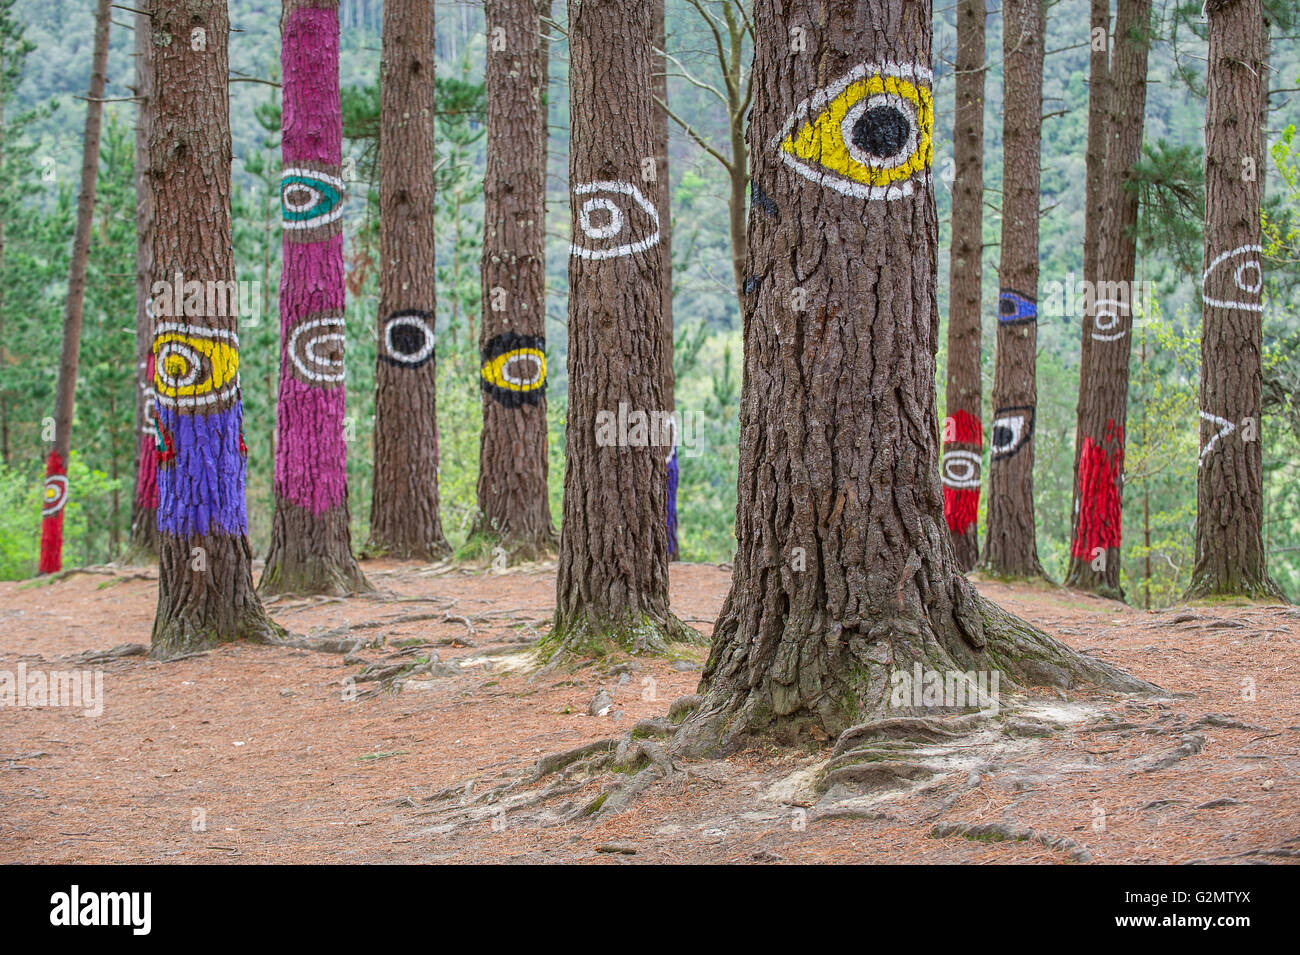 Troncs d'arbres peints, bois peint, El Bosque animado de Oma, artiste Agustín Ibarrola, Oma forêt, Pays Basque, Espagne Banque D'Images